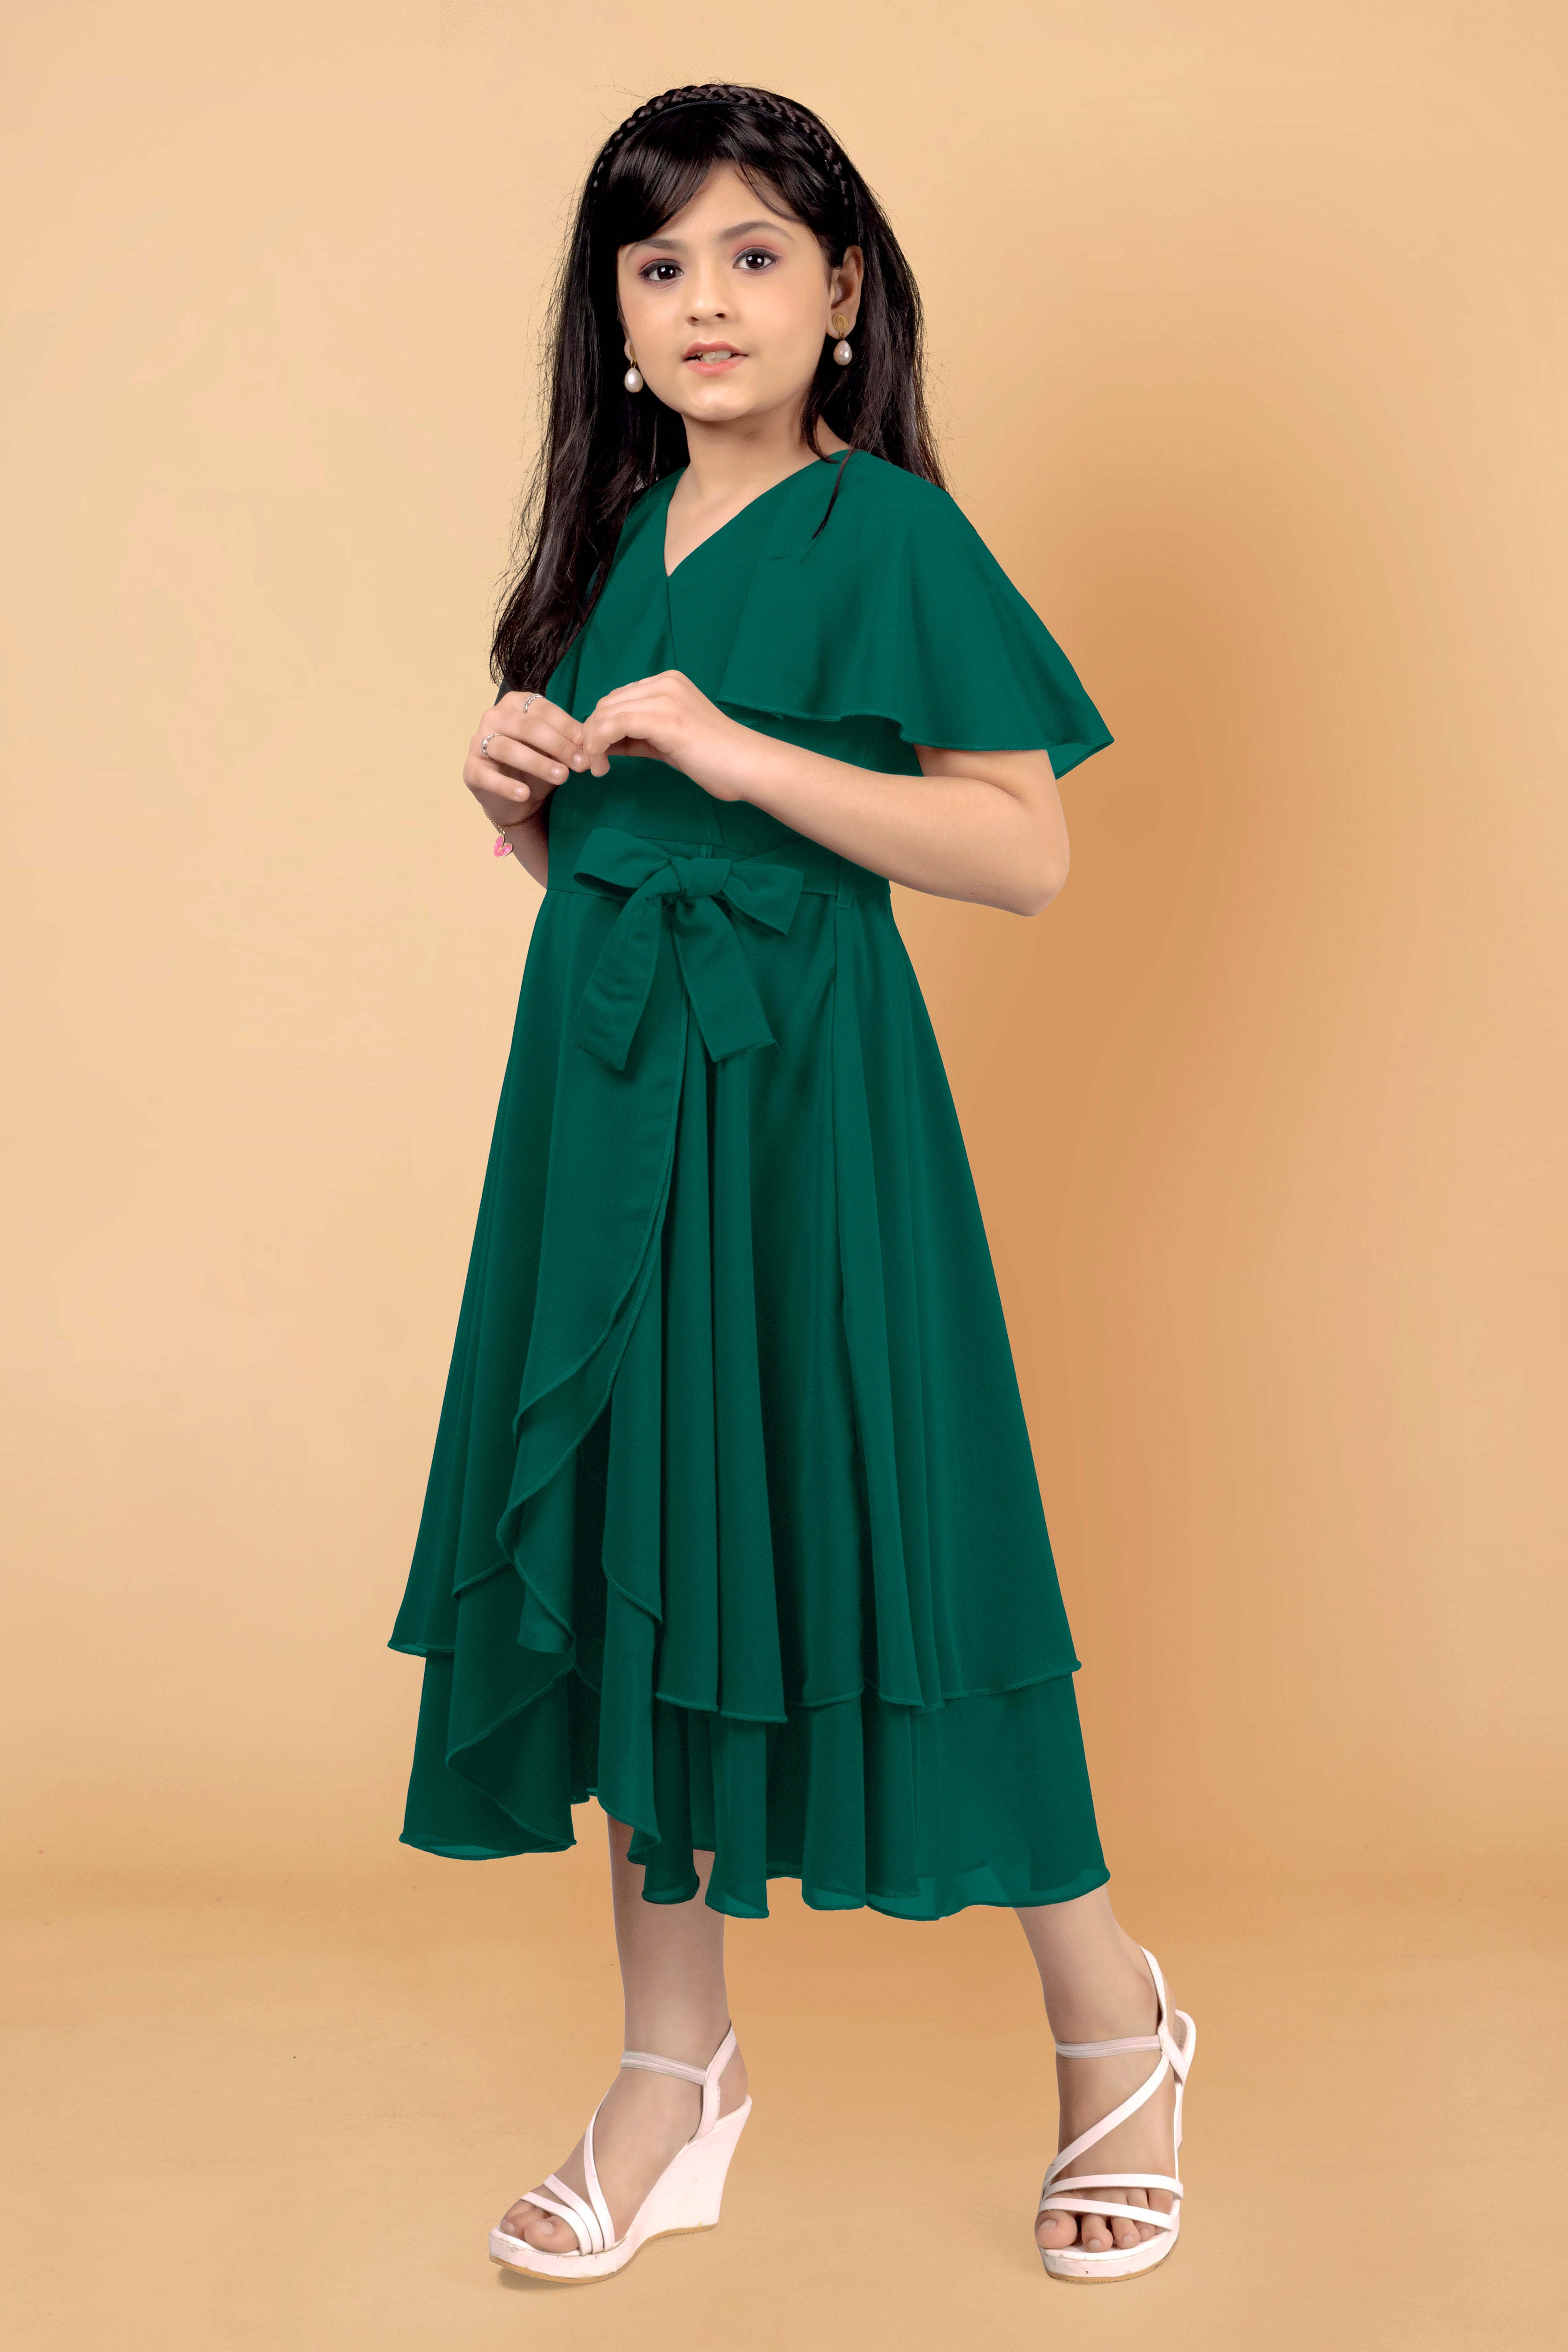 Girls Green Dresses  Buy Green Dresses Online For Girls at Best Prices In  India  Flipkartcom